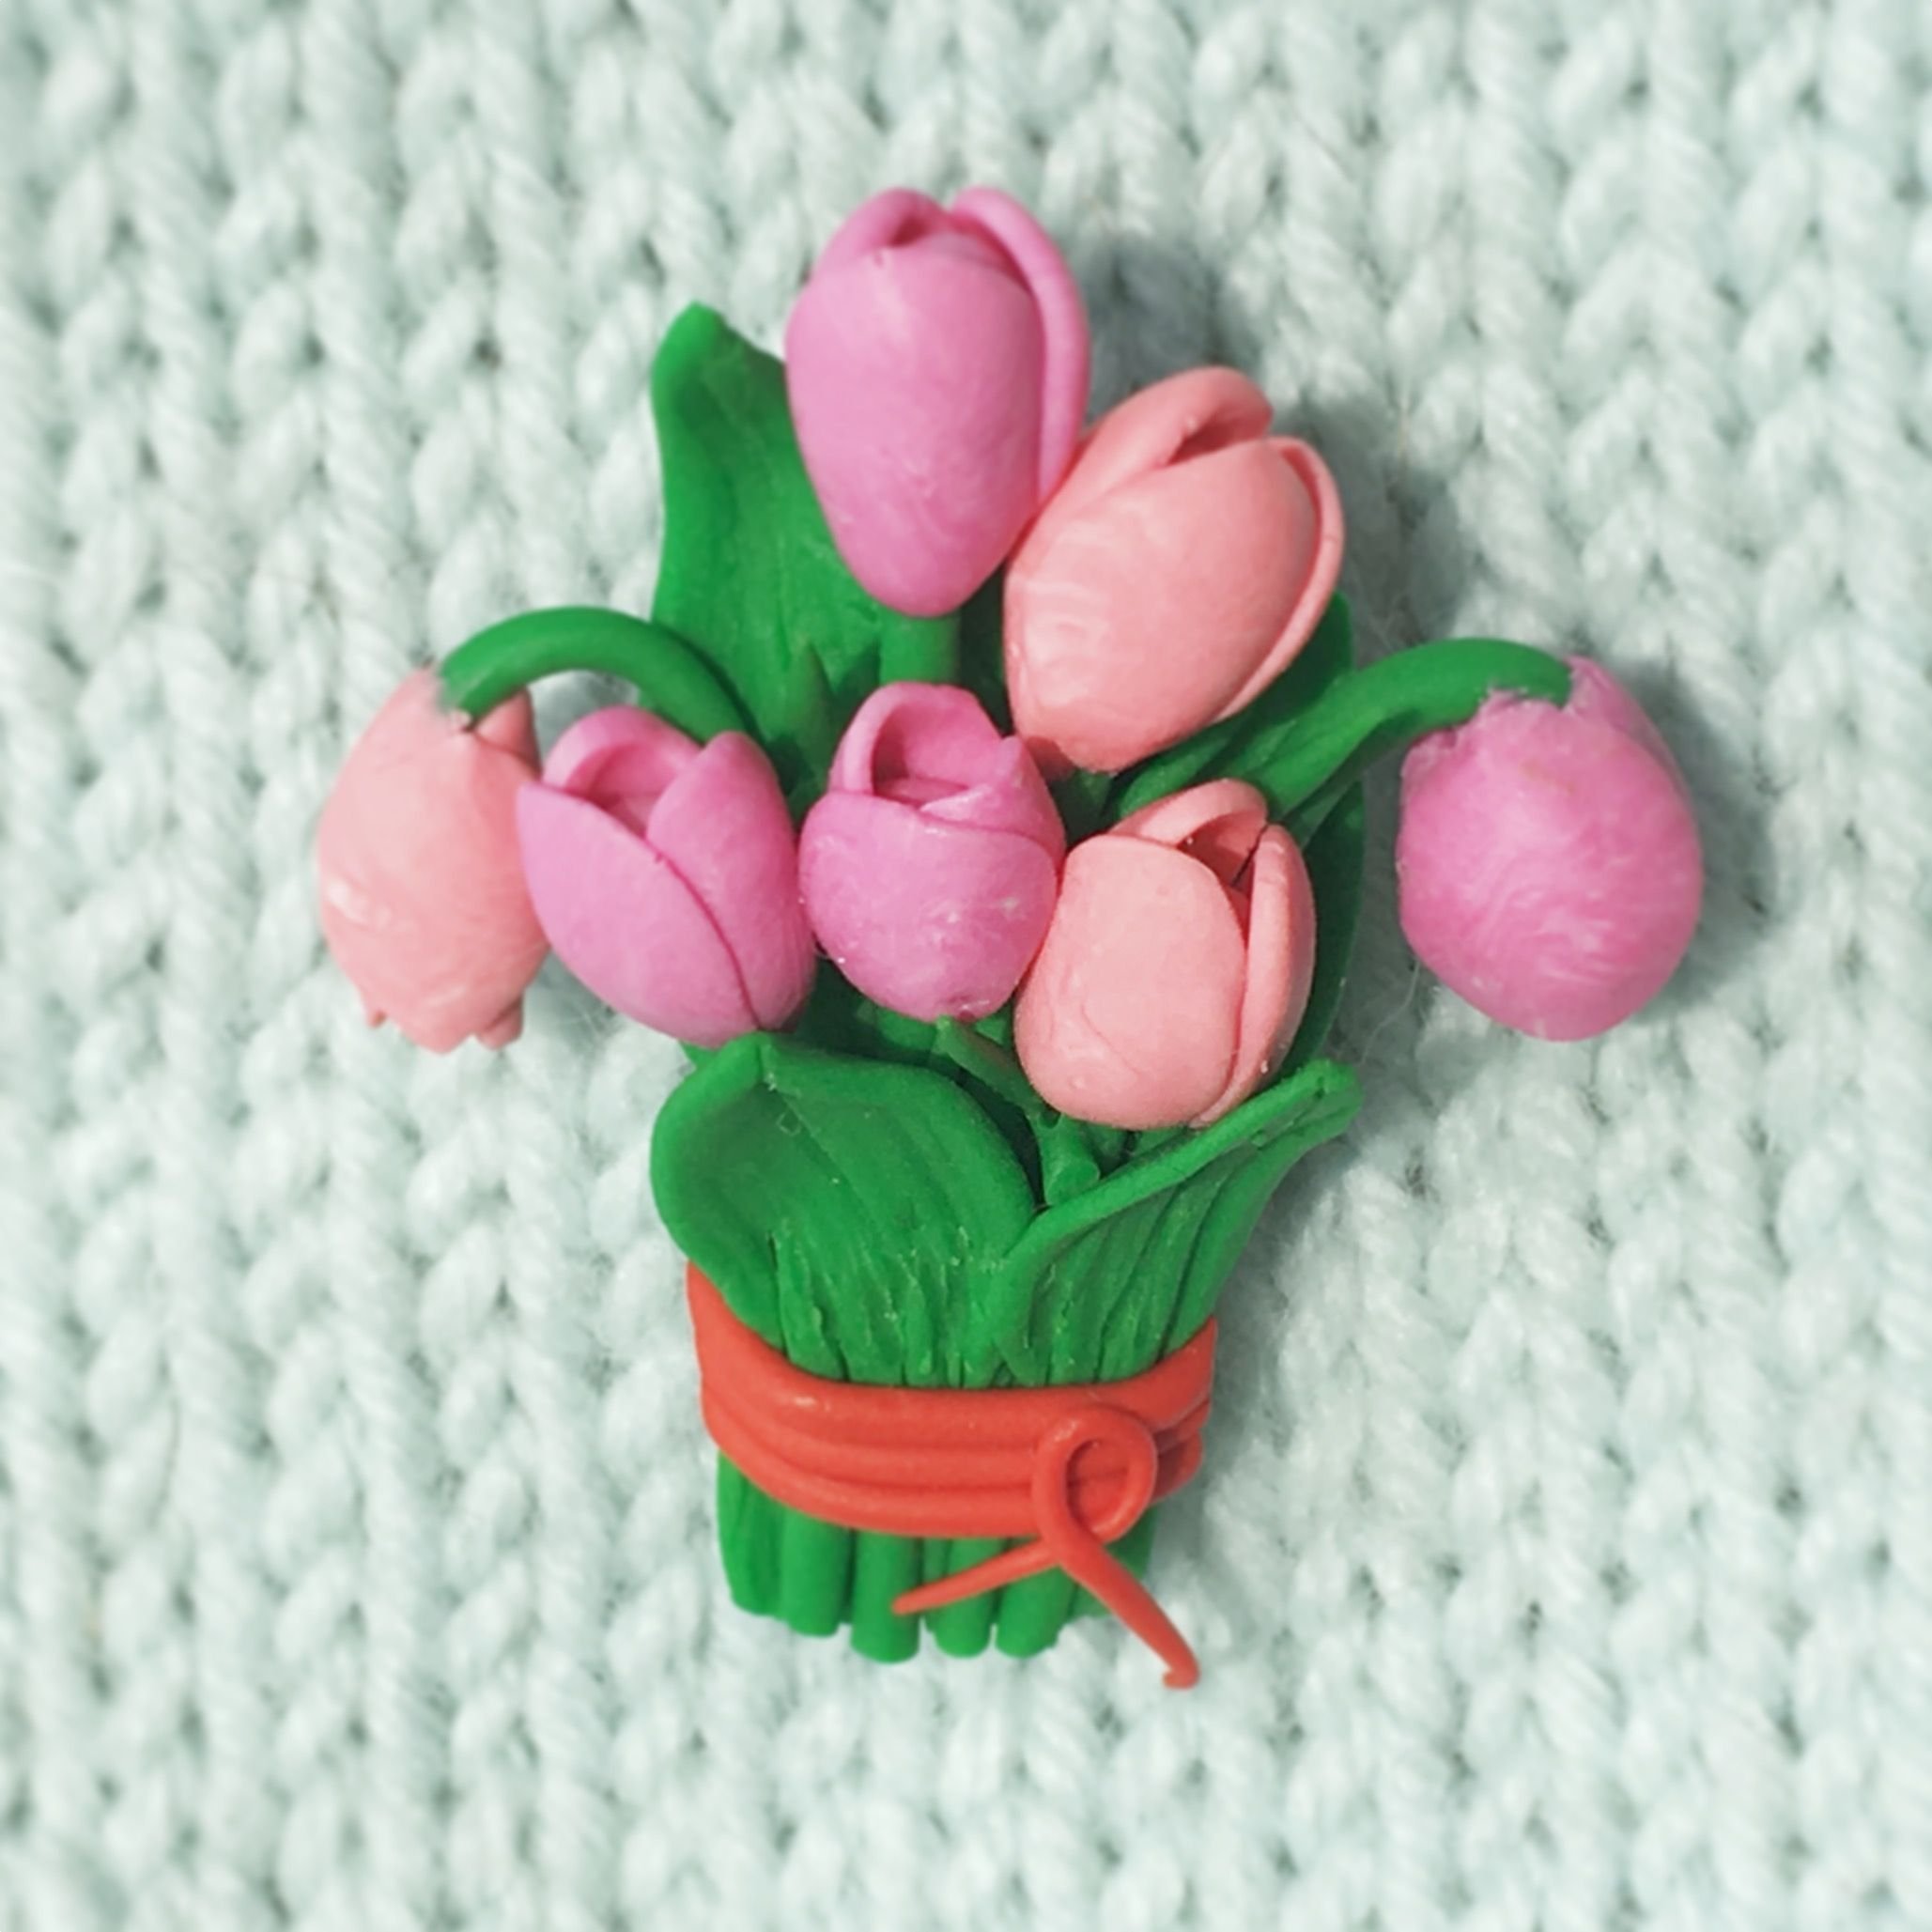 Поделки тюльпаны из пластилина идеи по изготовлению своими руками фото